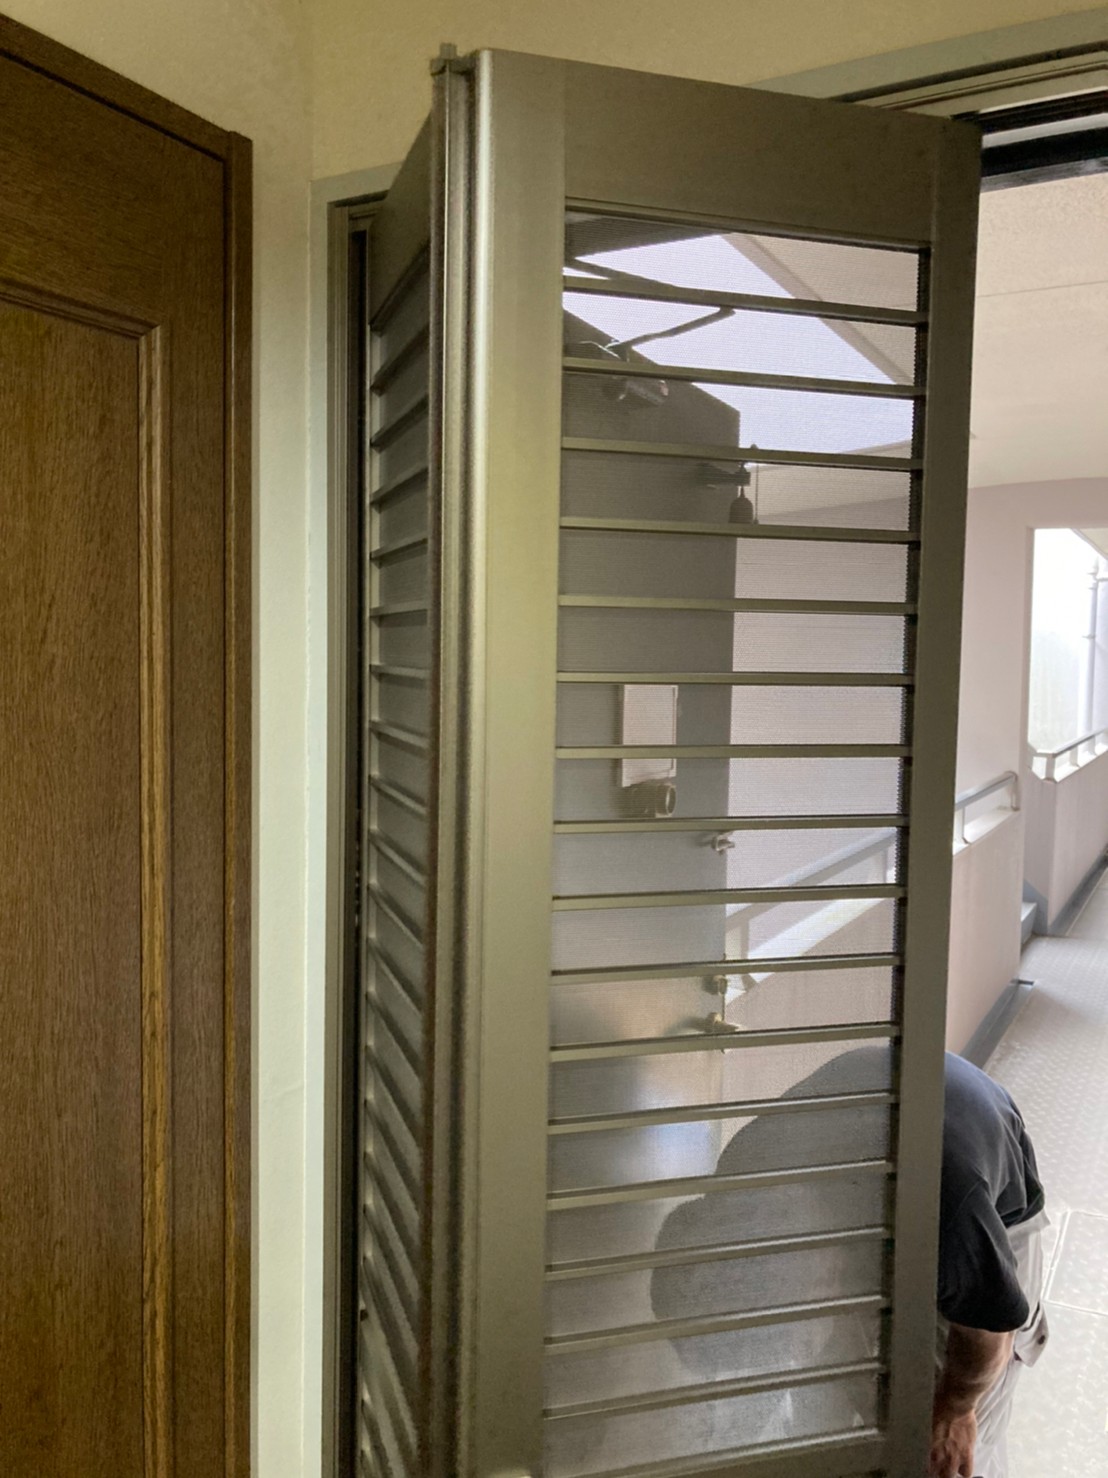 広島市西区、玄関ドアに風通しの良い折り畳み式網戸の設置工事！リピータ様からの工事依頼。